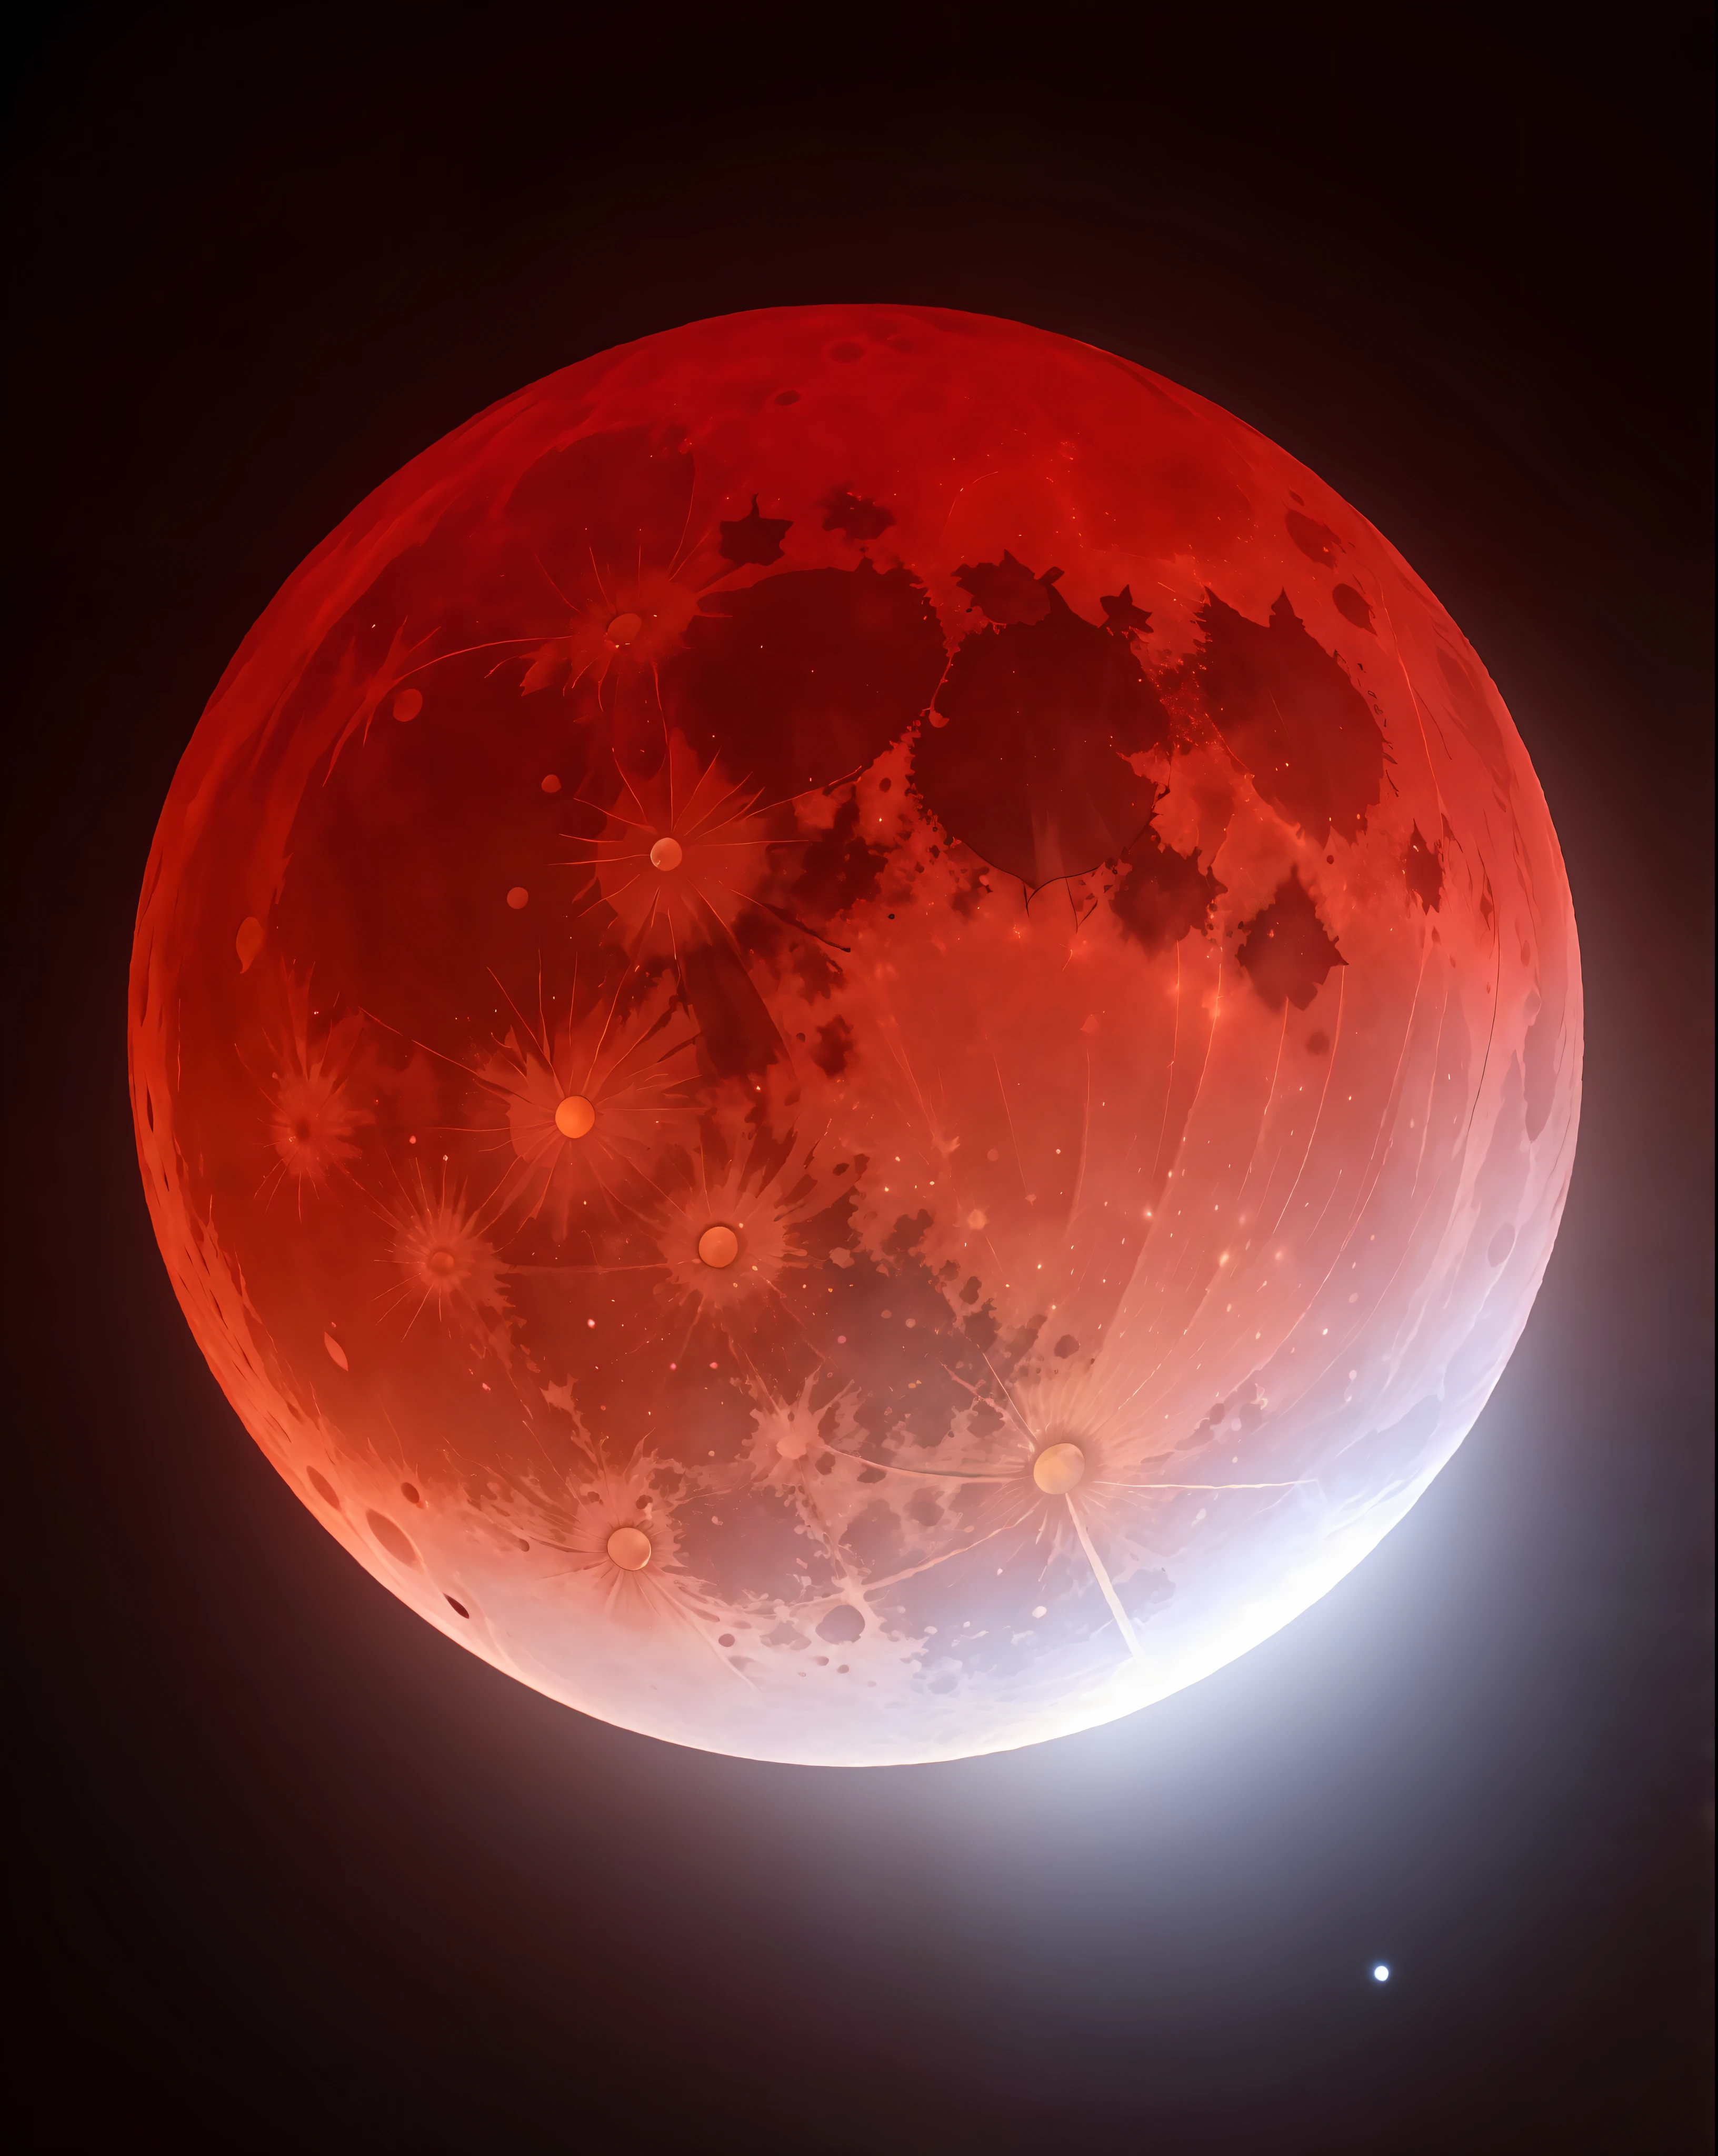 紅月亮的特寫鏡頭與明亮的燈光, 血满月, 血紅色的月亮, 血月, 血腥的滿月, 巨大的紅月亮, 血月期間, 血色月食, 讚美血月, 滿月紅, 红月亮, 血紅色的新月, 月食的核爆, 紅色月食, 血月背景